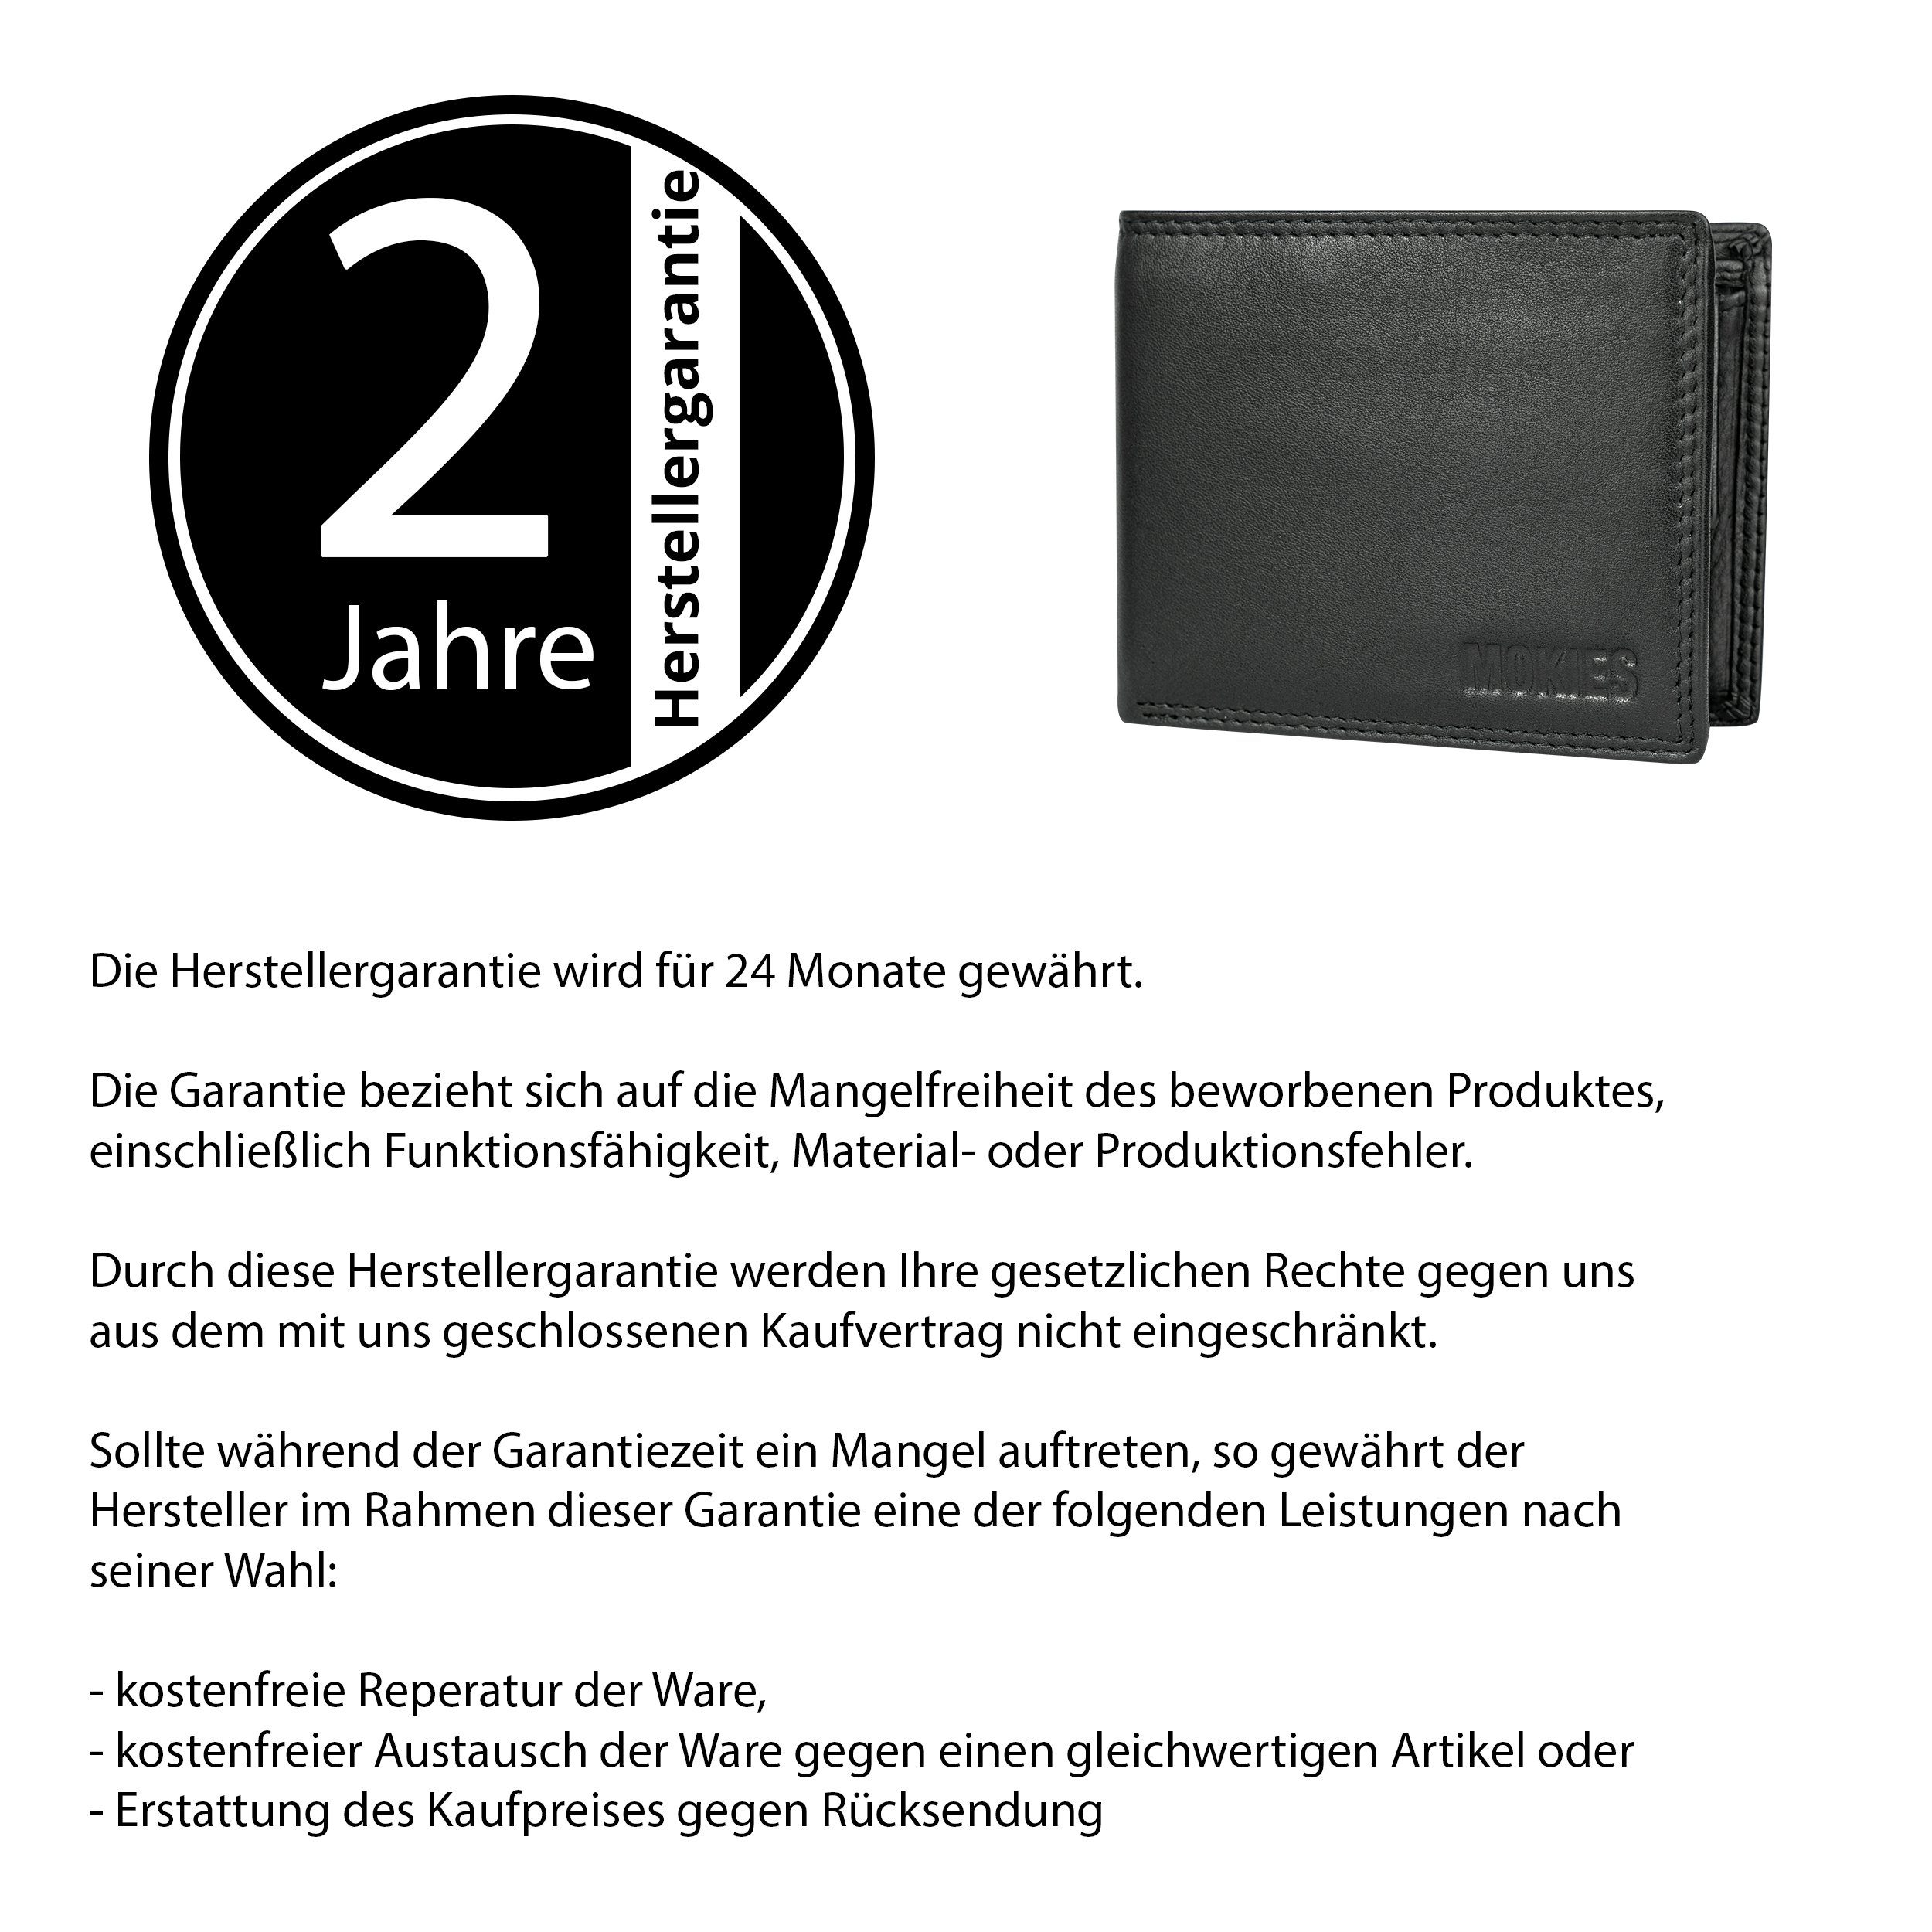 Portemonnaie Herren RFID-/NFC-Schutz Nappa-Leder, (querformat), Nappa MOKIES 100% Geldbörse GN109 Echt-Leder, Premium Premium